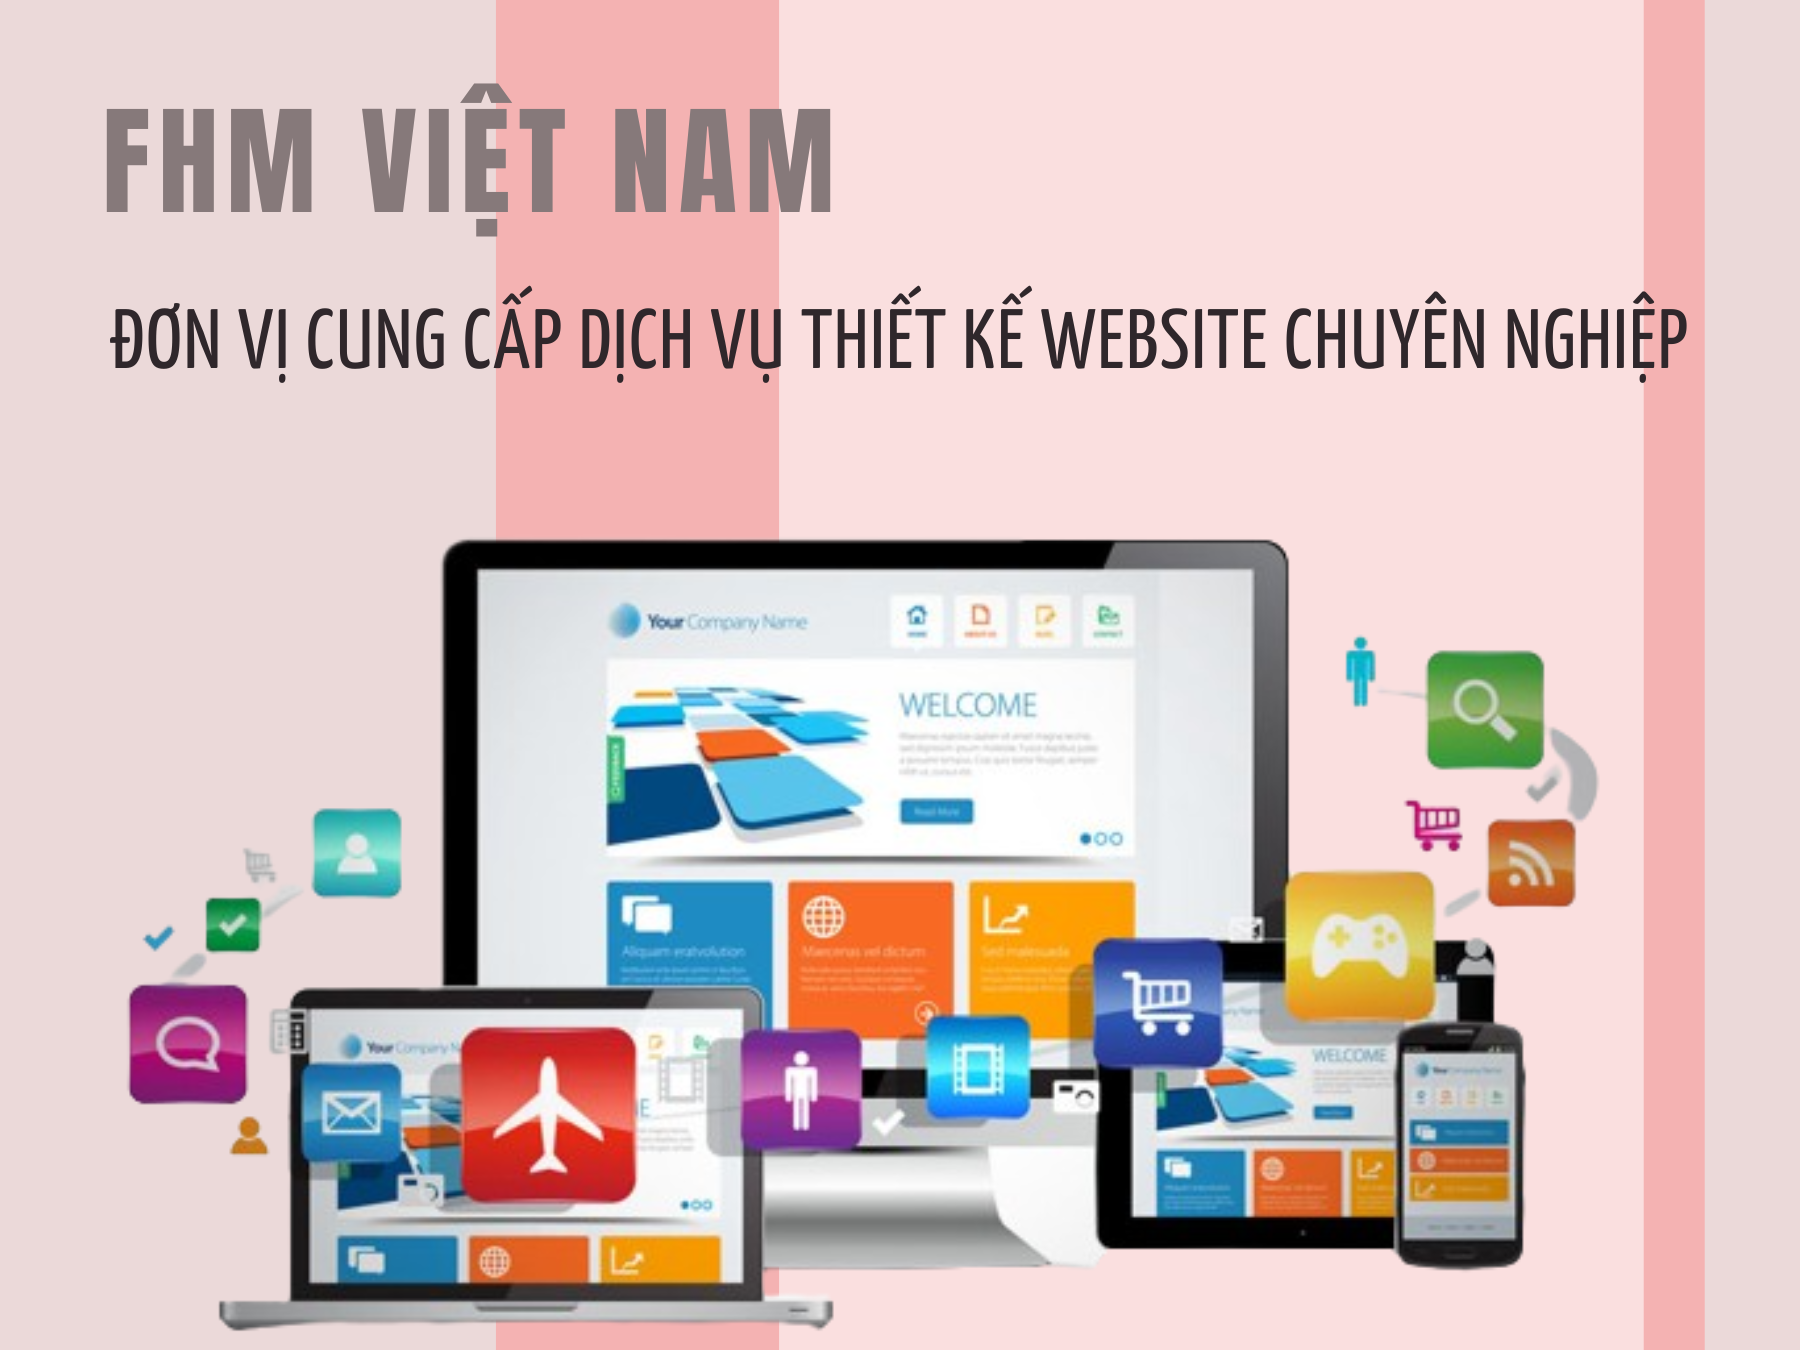 dich-vu-thiet-ke-website-chuyen-nghiep-2